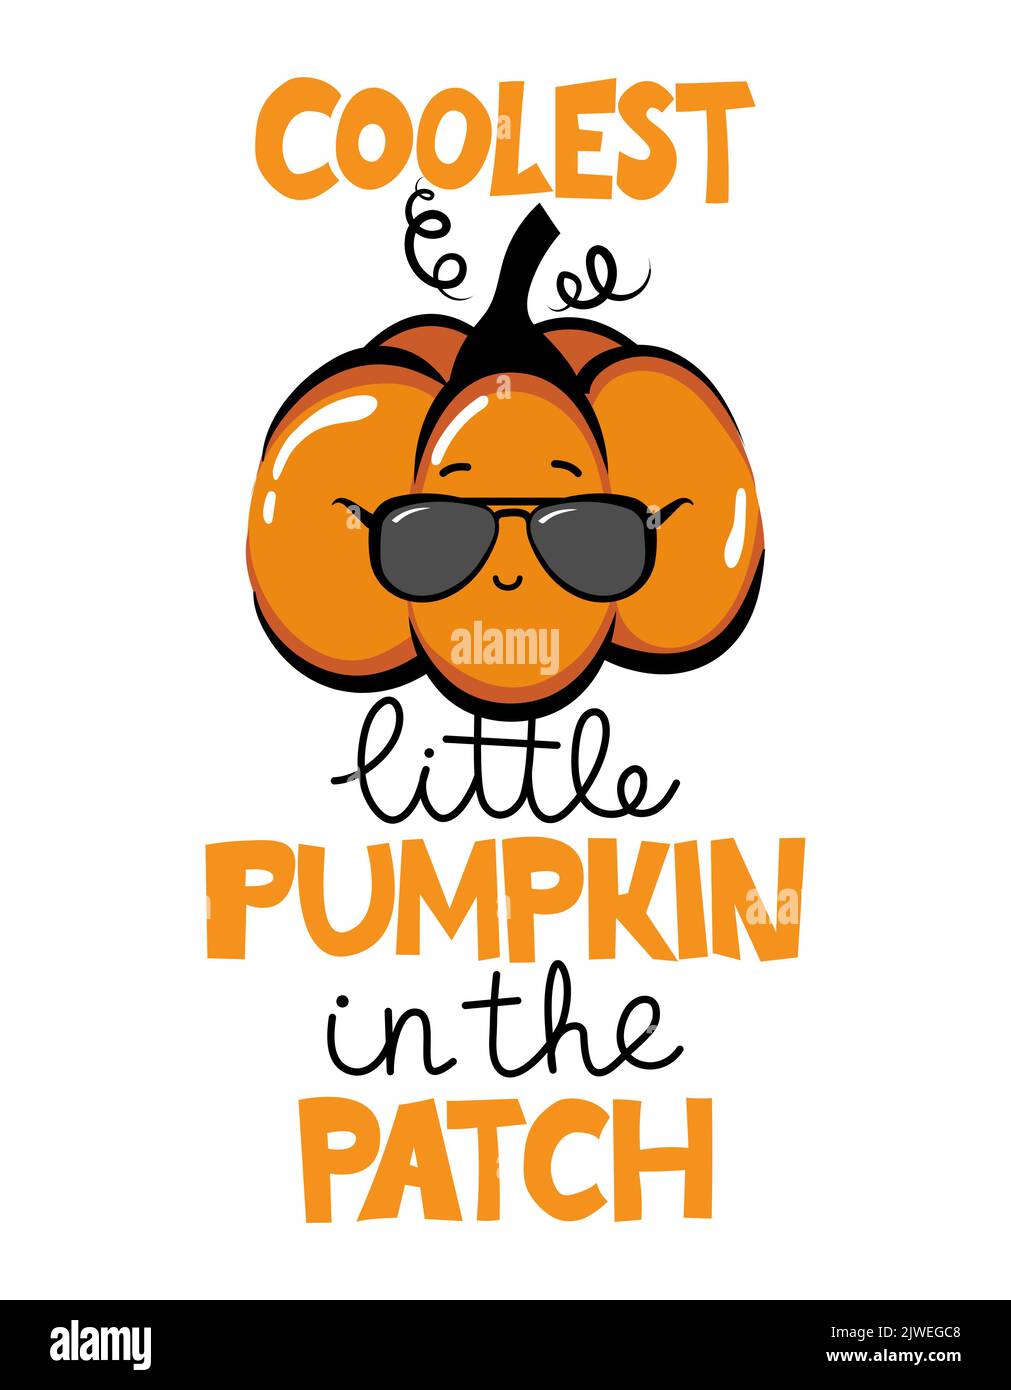 Zucca piccola più cool nel Patch - mano disegnata bella zucca con citazione per l'autunno. Poster a colori autunnale. Illustrazione Vettoriale